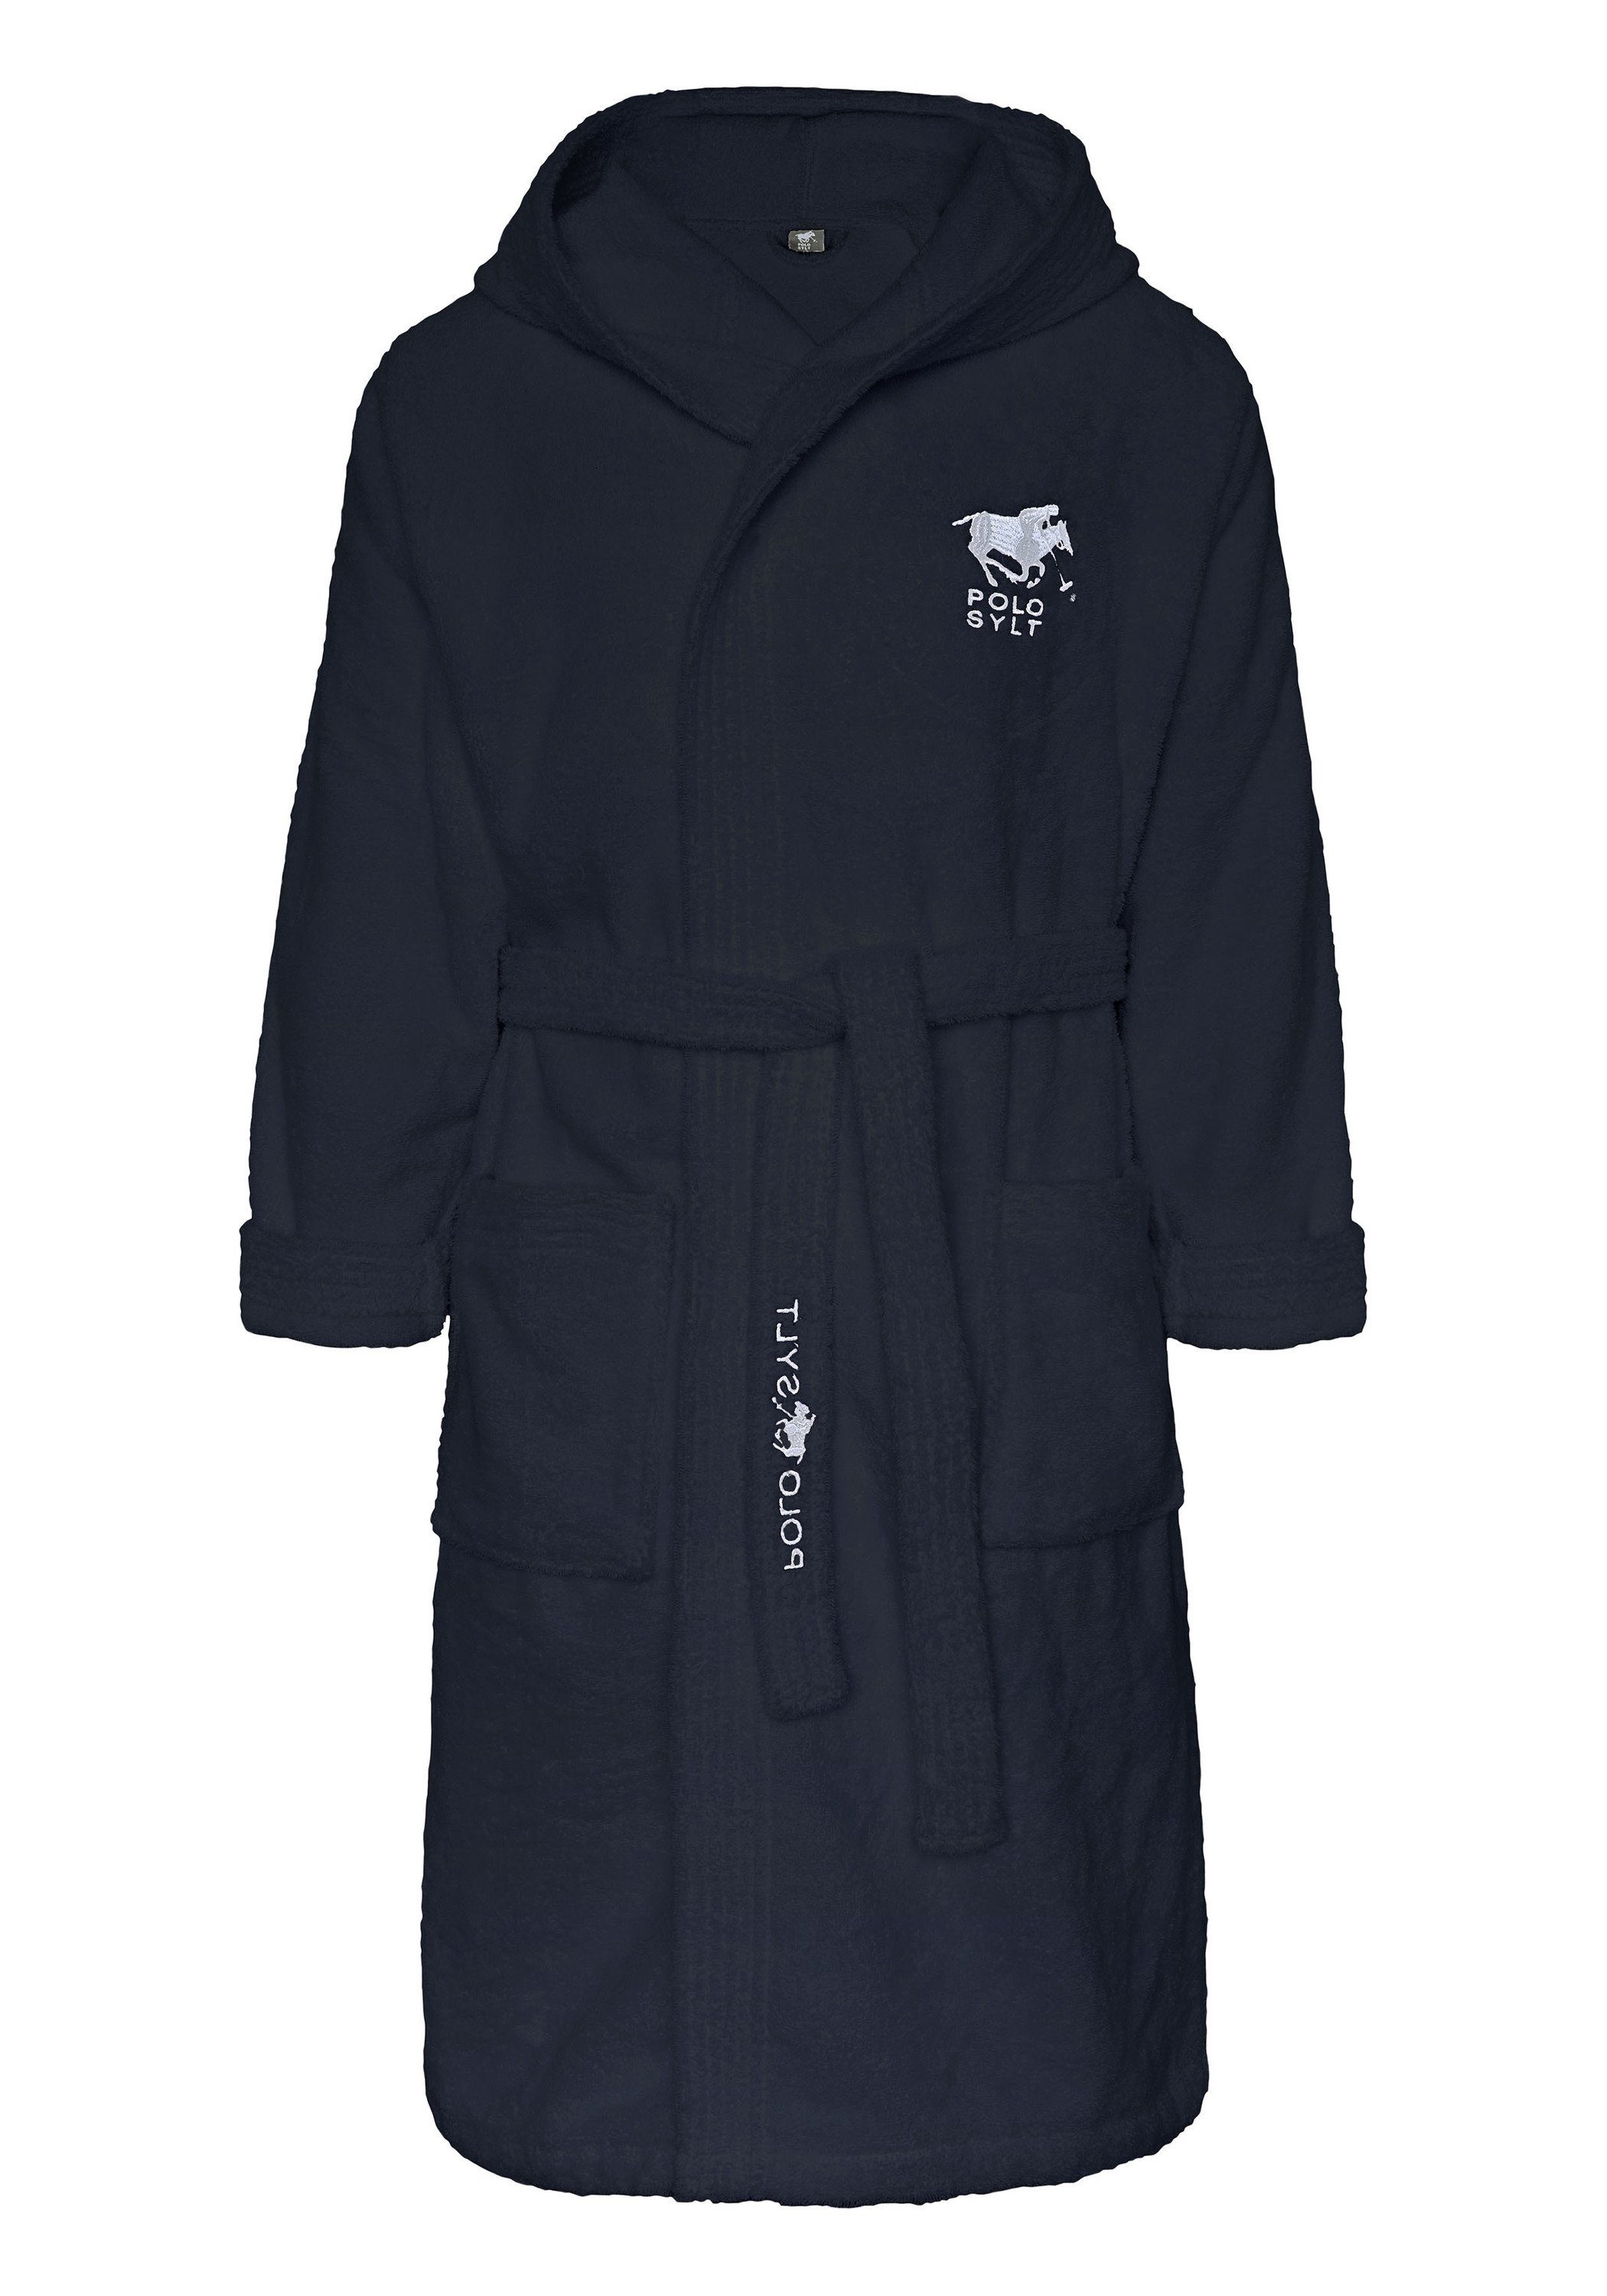 Polo Sylt Bademantel Logos, Gürtel Gürtel dunkelblau aufgesetzten Baumwolle, Taschen, und mit langform